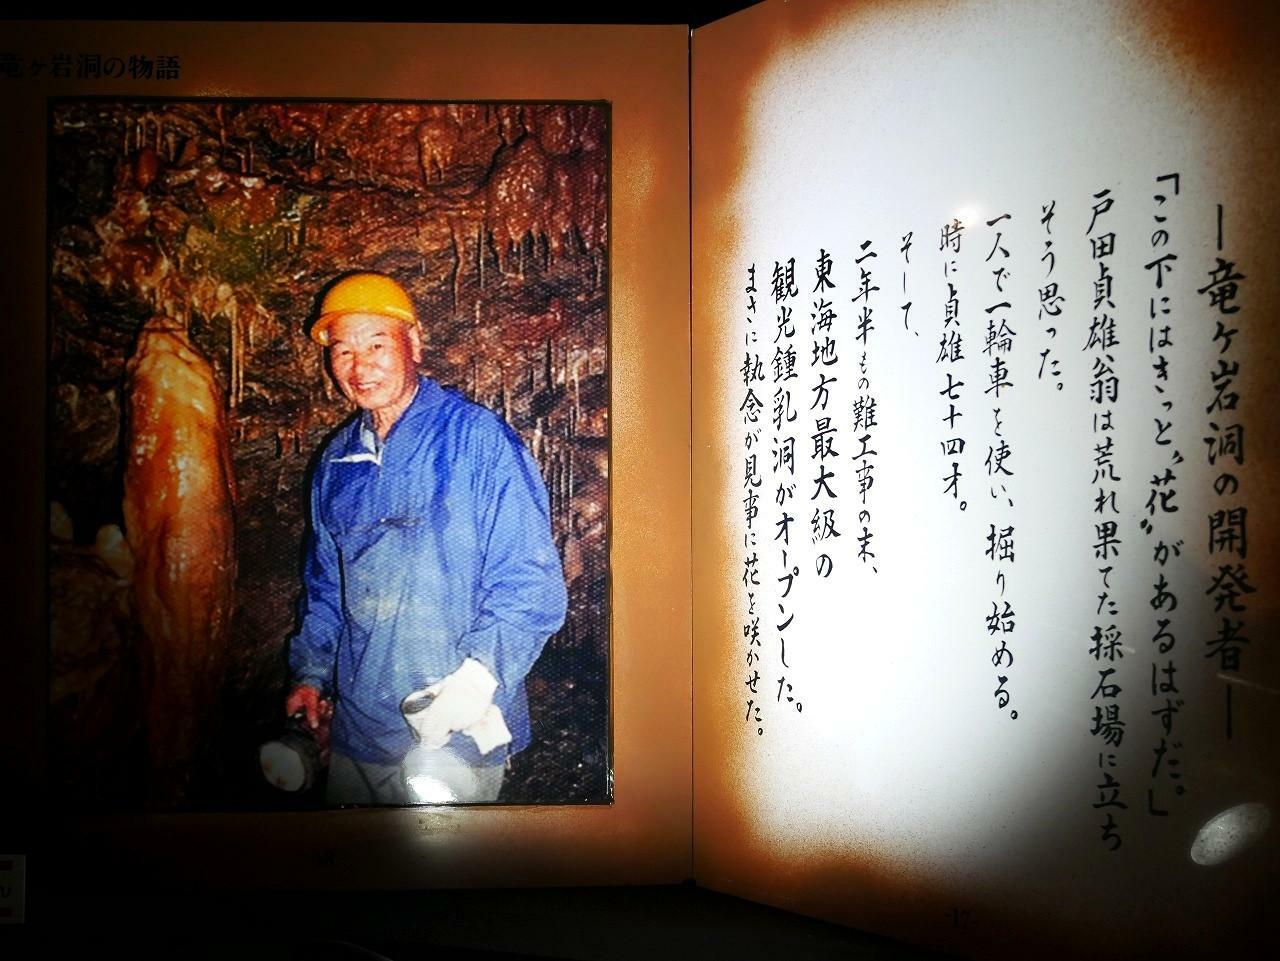 竜ヶ岩洞開発者・戸田貞雄さんの写真